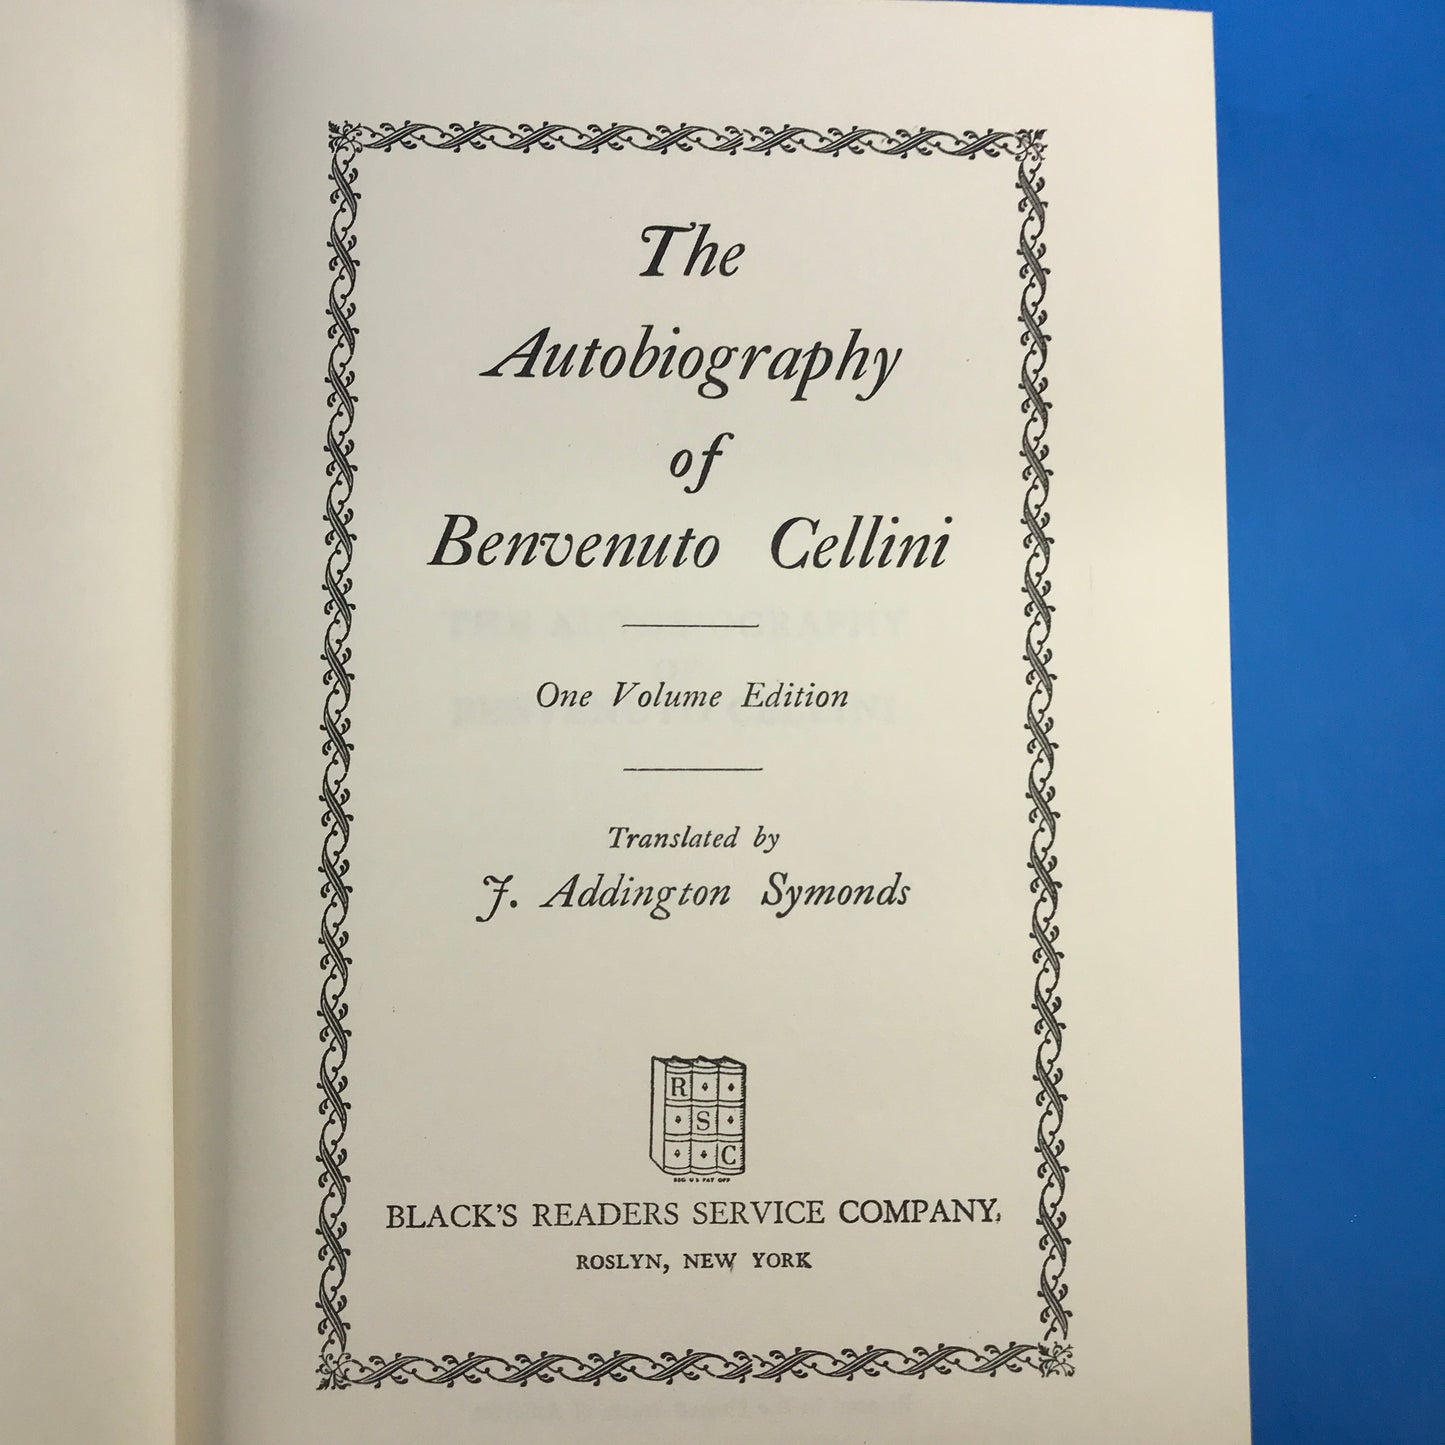 The Works of Benvenuto Cellini